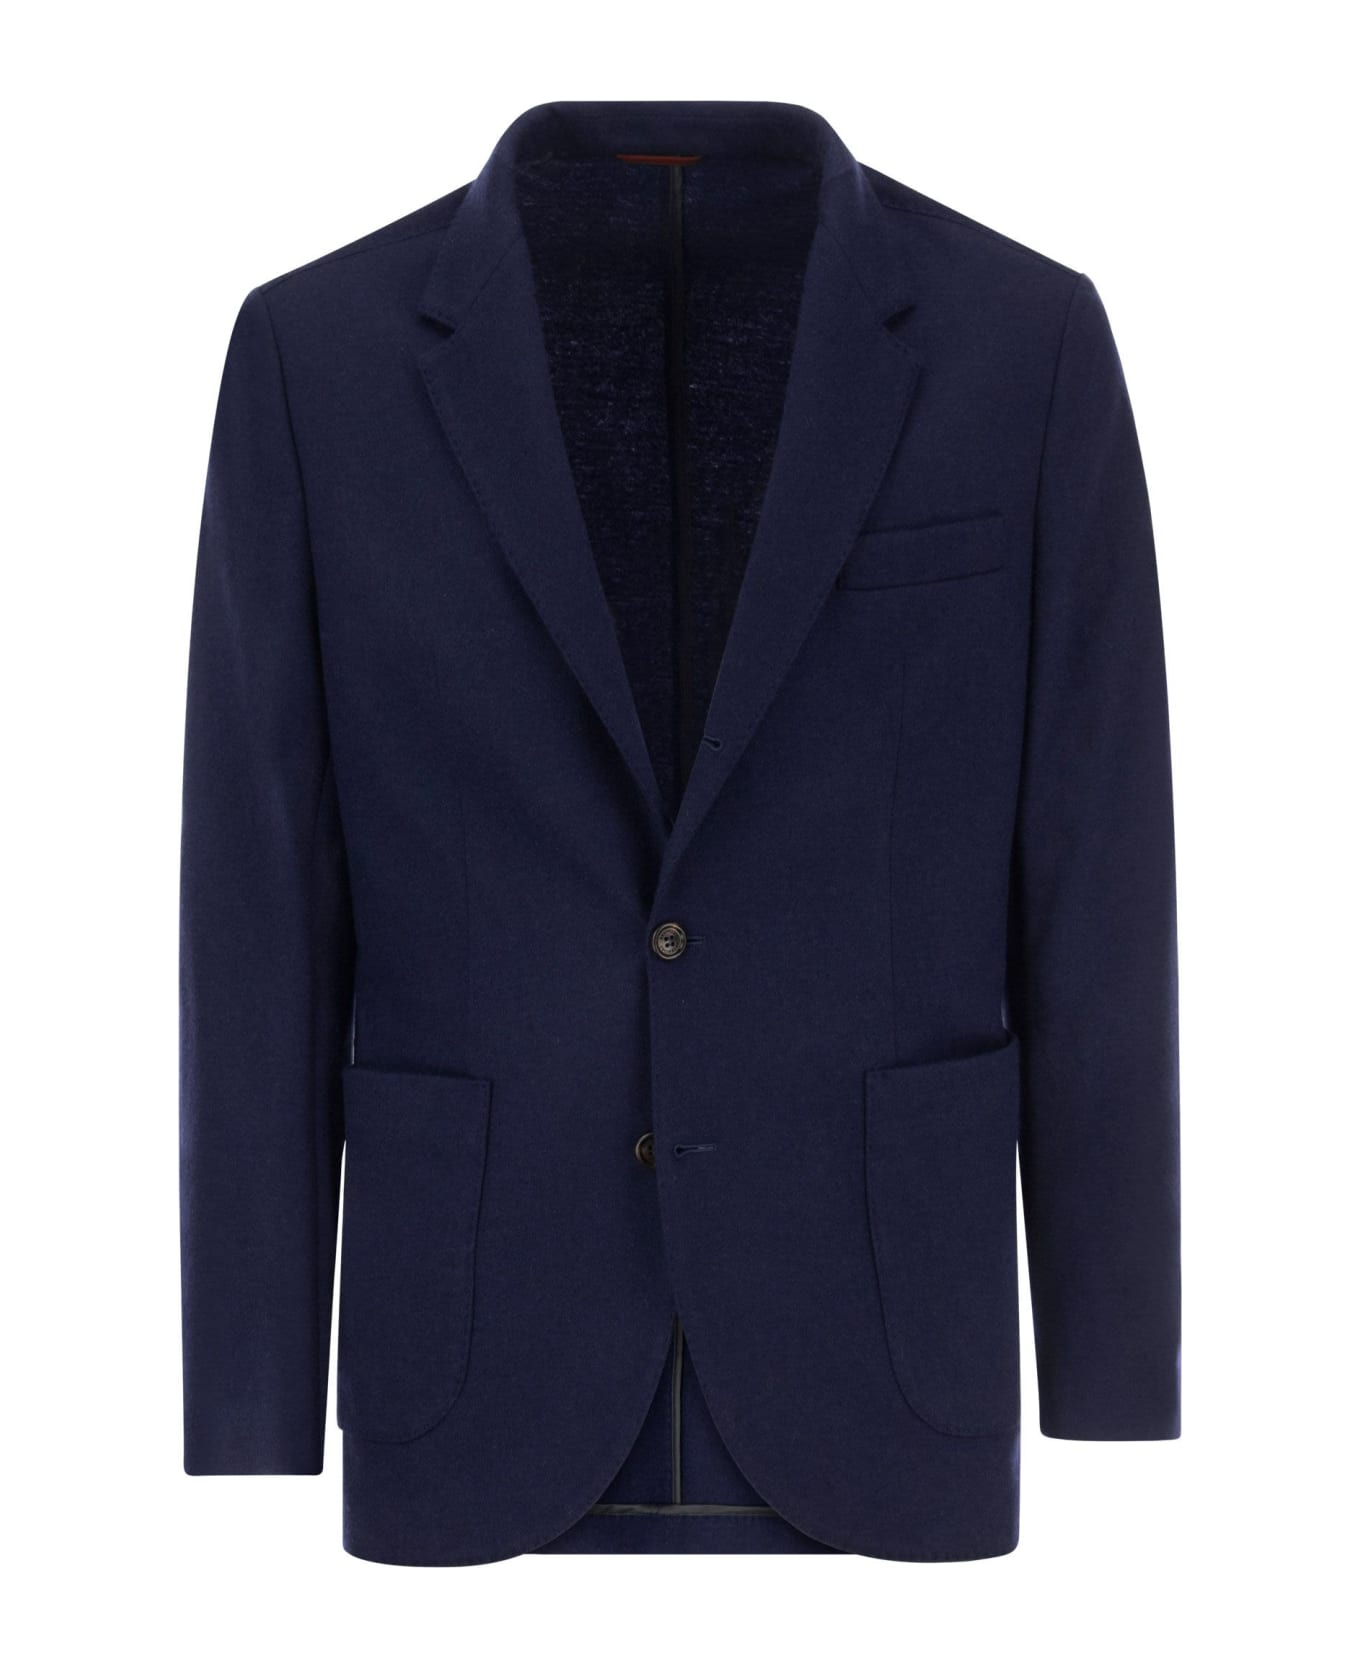 Brunello Cucinelli Cashmere Jersey Blazer With Patch Pockets - Cobalt スーツ